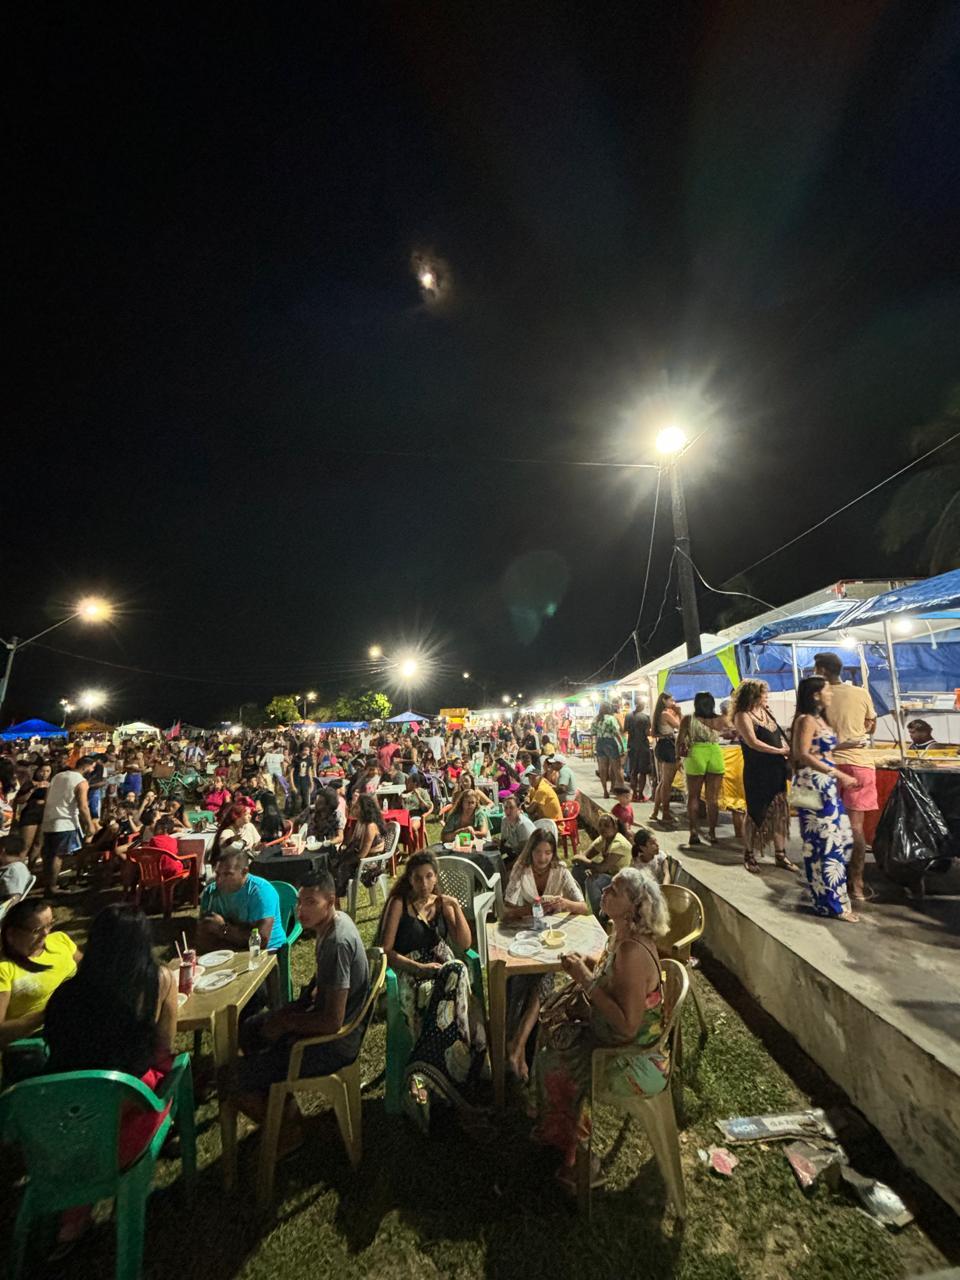 Tacacá, maniçoba, tucupi, vatapá, galinhada, caldo de turú e guaraná, a culinária tipicamente paraense teve espaço no festival Choro Jazz